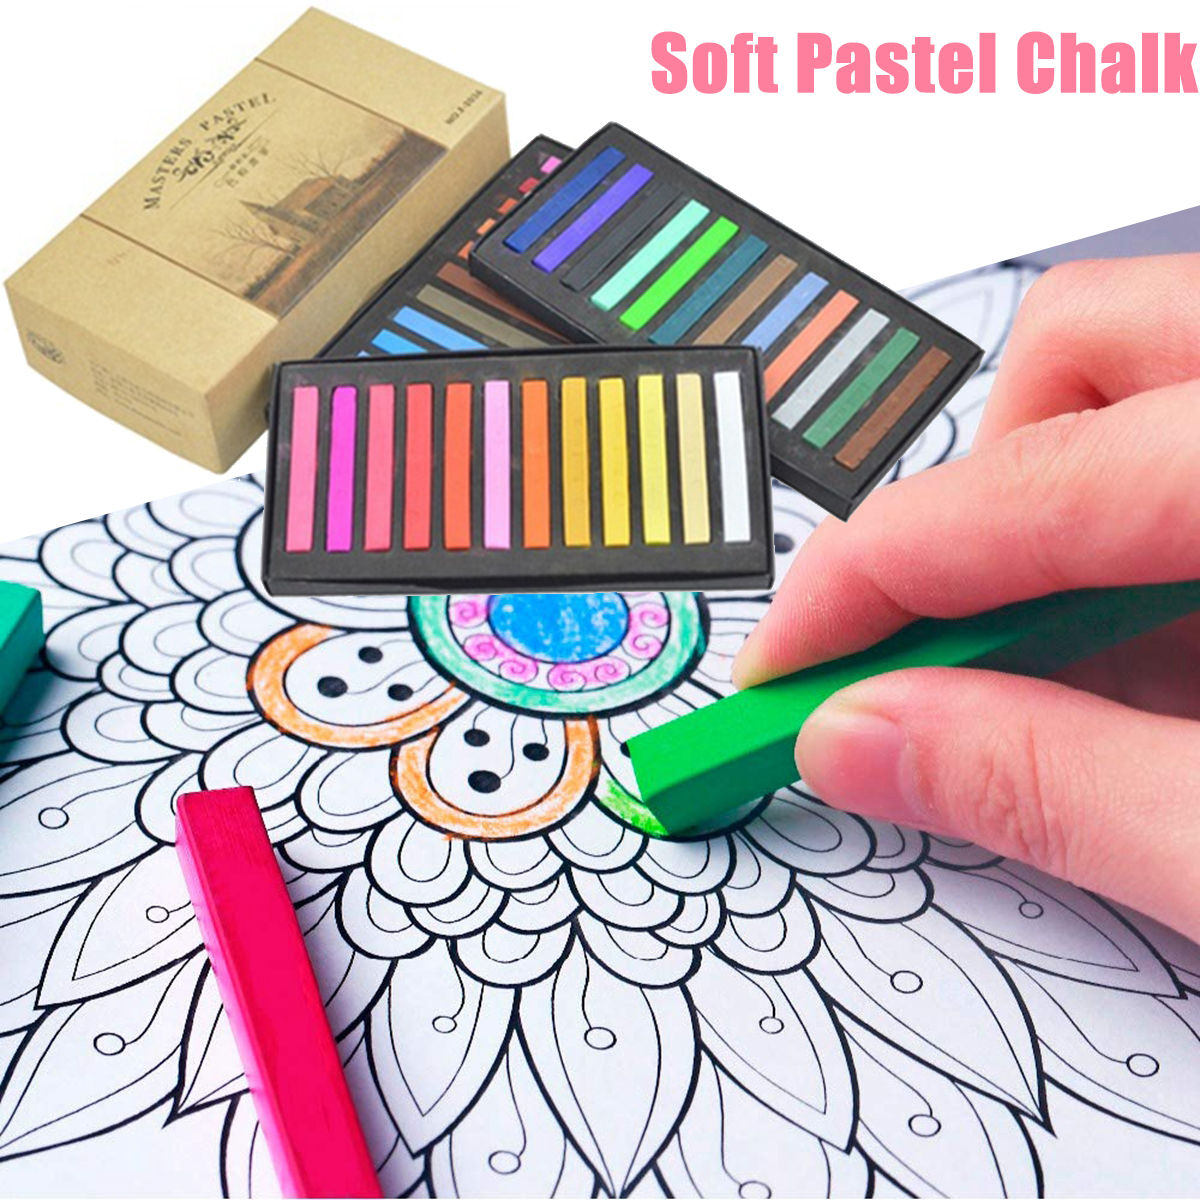 BSI7LL5Z Lower Adhesion เด็กของขวัญการวาดกราฟิติภาพวาดอุปกรณ์สีอ่อนเครื่องเขียนสำหรับนักเรียนชอล์กดินสอสี